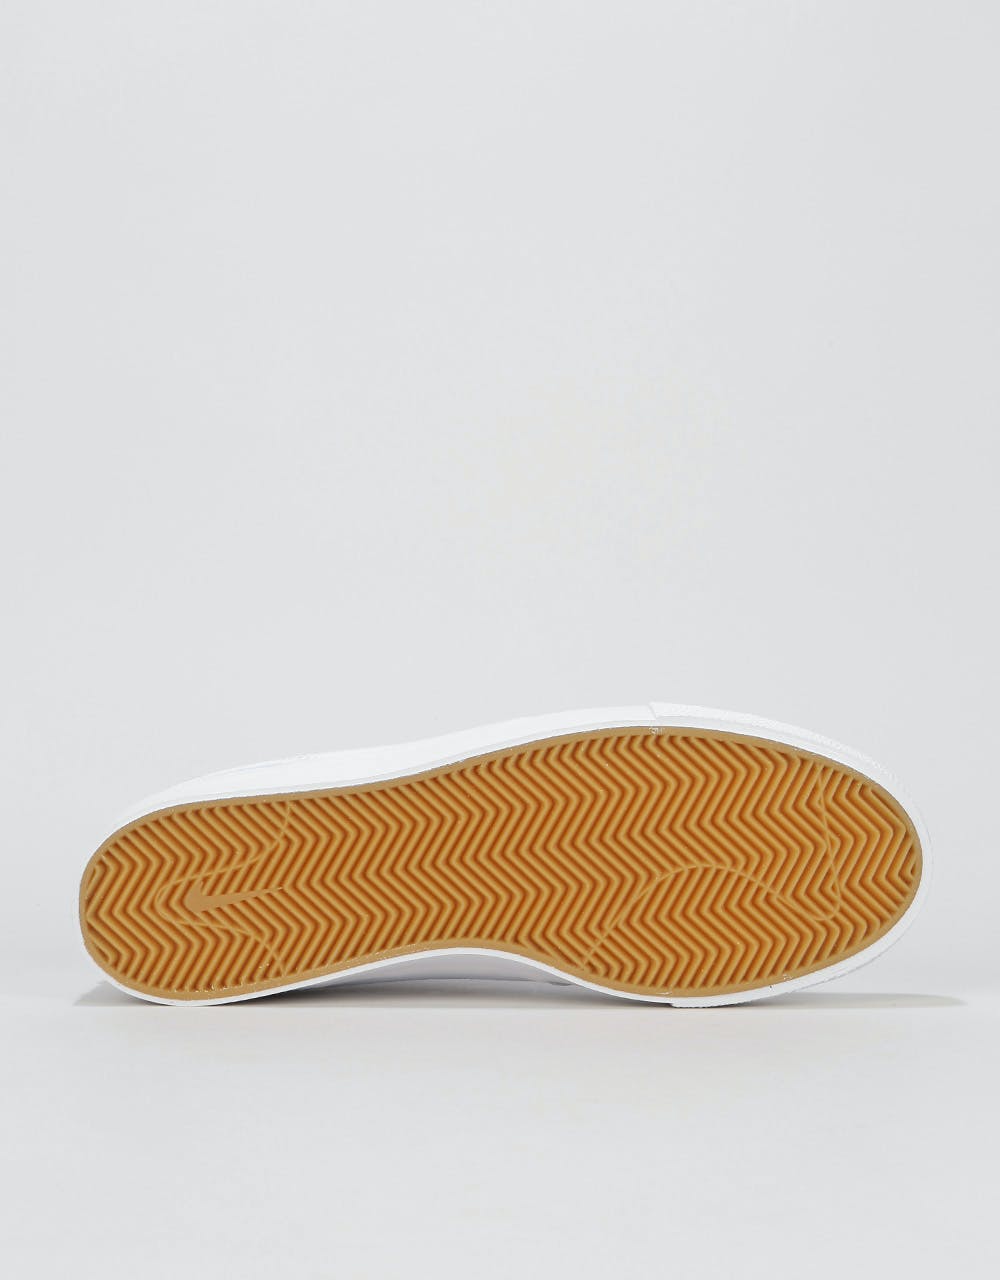 Nike SB Zoom Janoski RM Canvas Skate Shoes - White/White-Gum